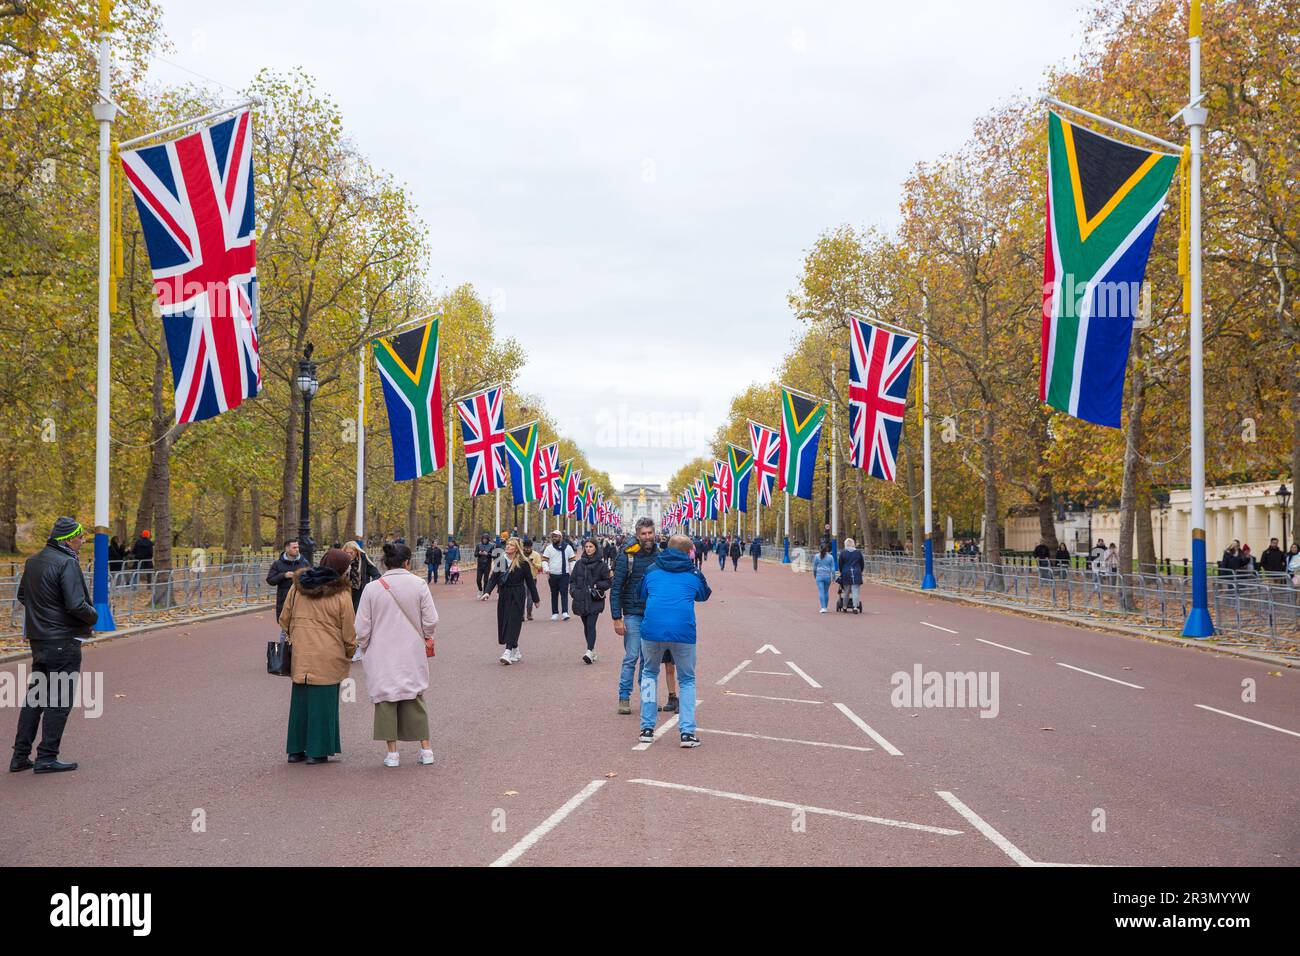 Les drapeaux de l'Union et les drapeaux de l'Afrique du Sud sont visibles dans le centre de Londres avant la visite d'État du Président de l'Afrique du Sud. Banque D'Images